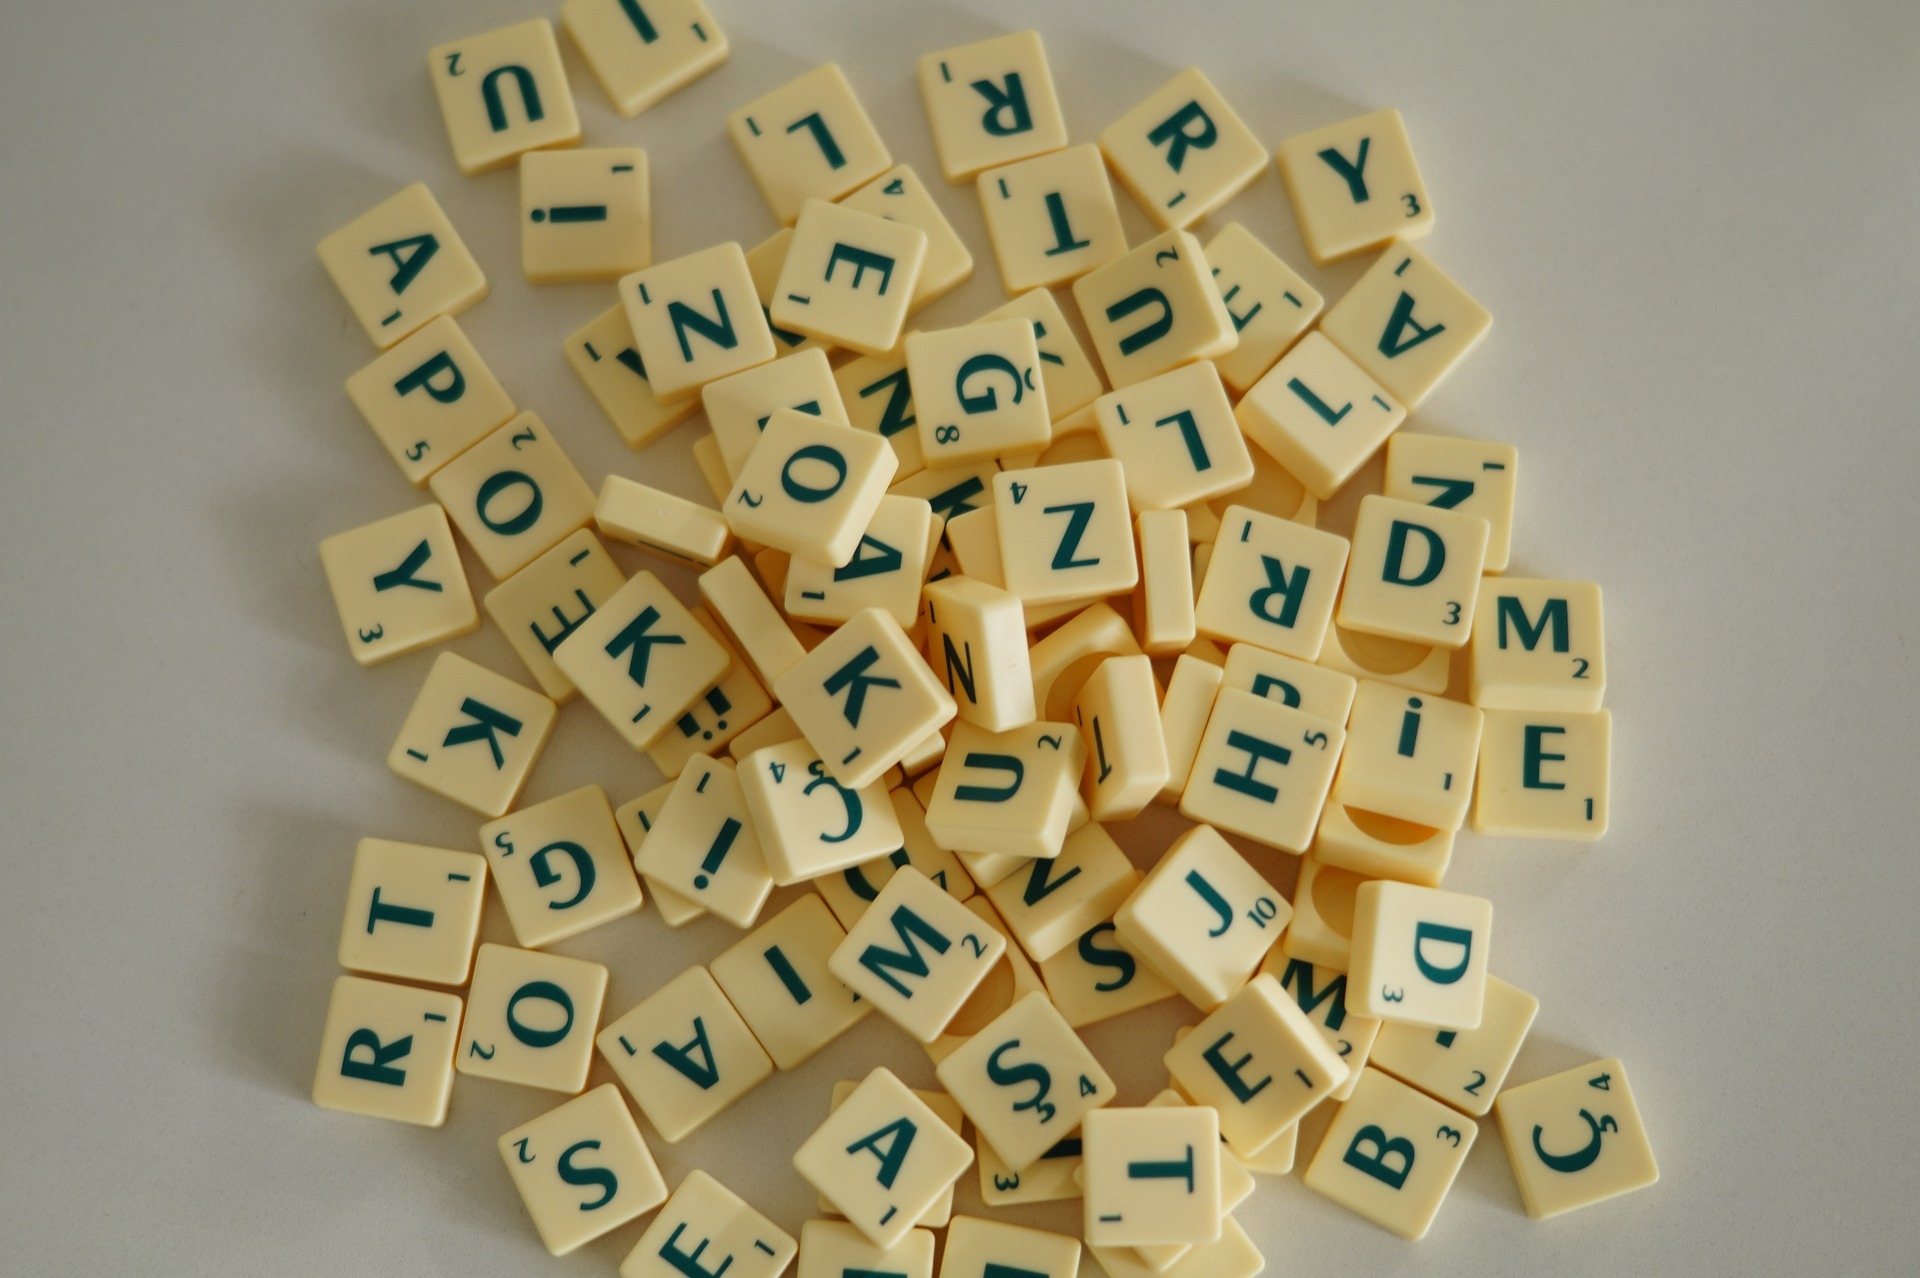 Piezas de letras del juego de mesa Scrabble.